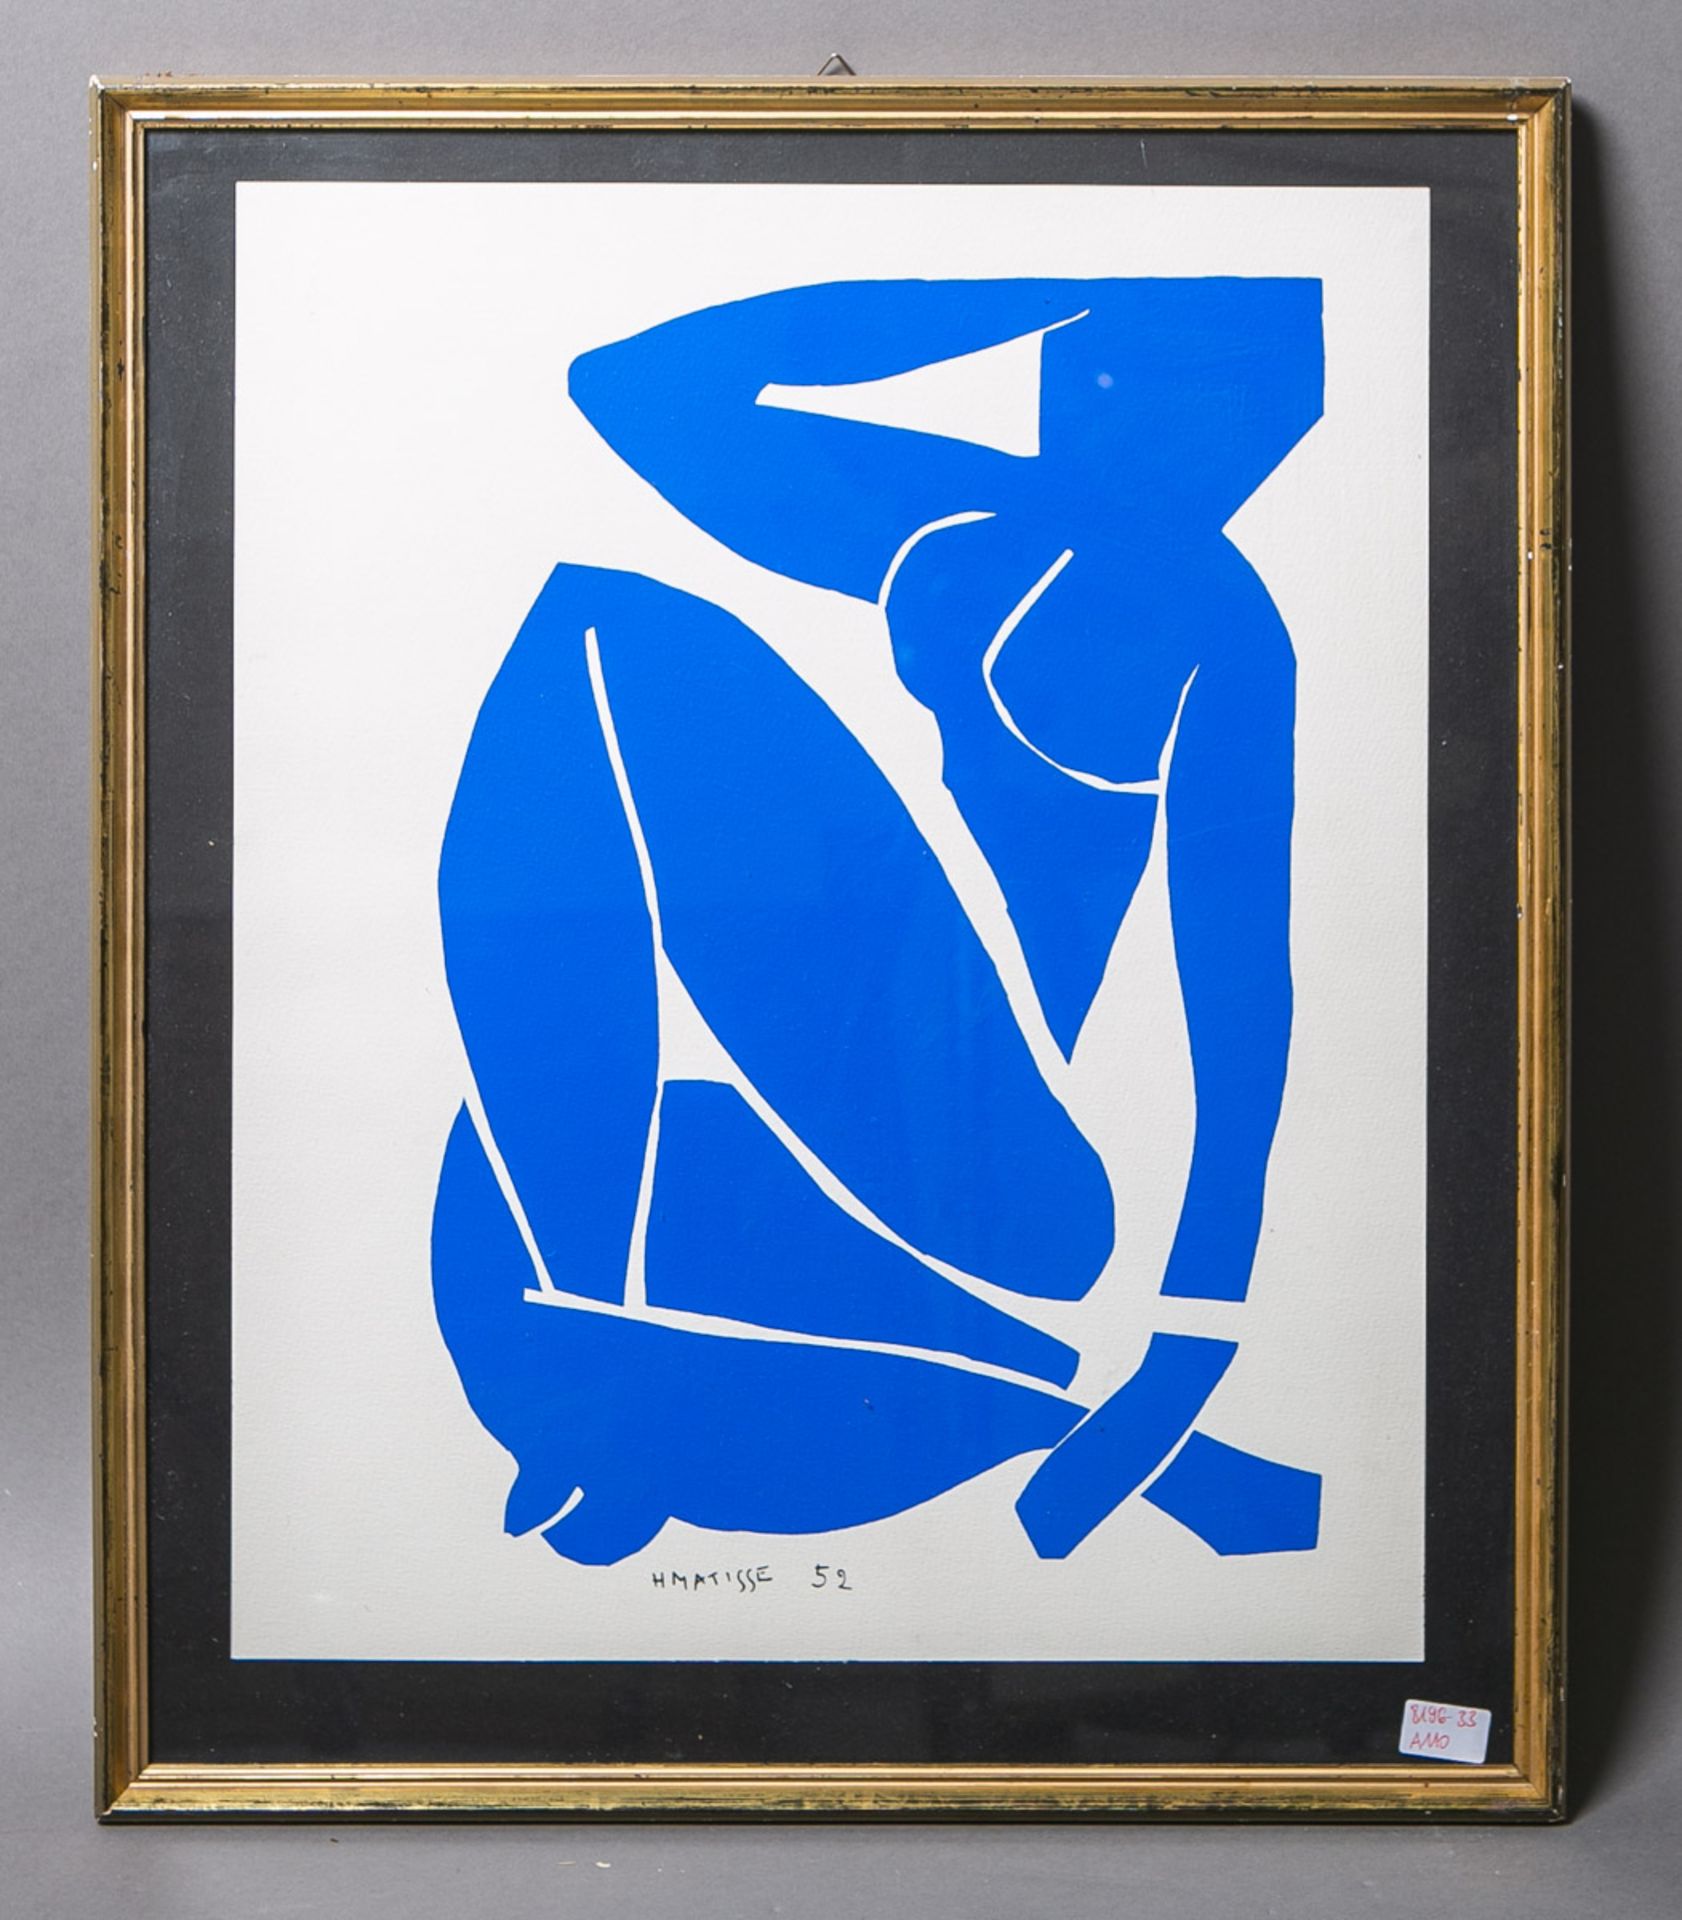 Matisse, Henry (1869 - 1954), "Blauer Akt" (1952)